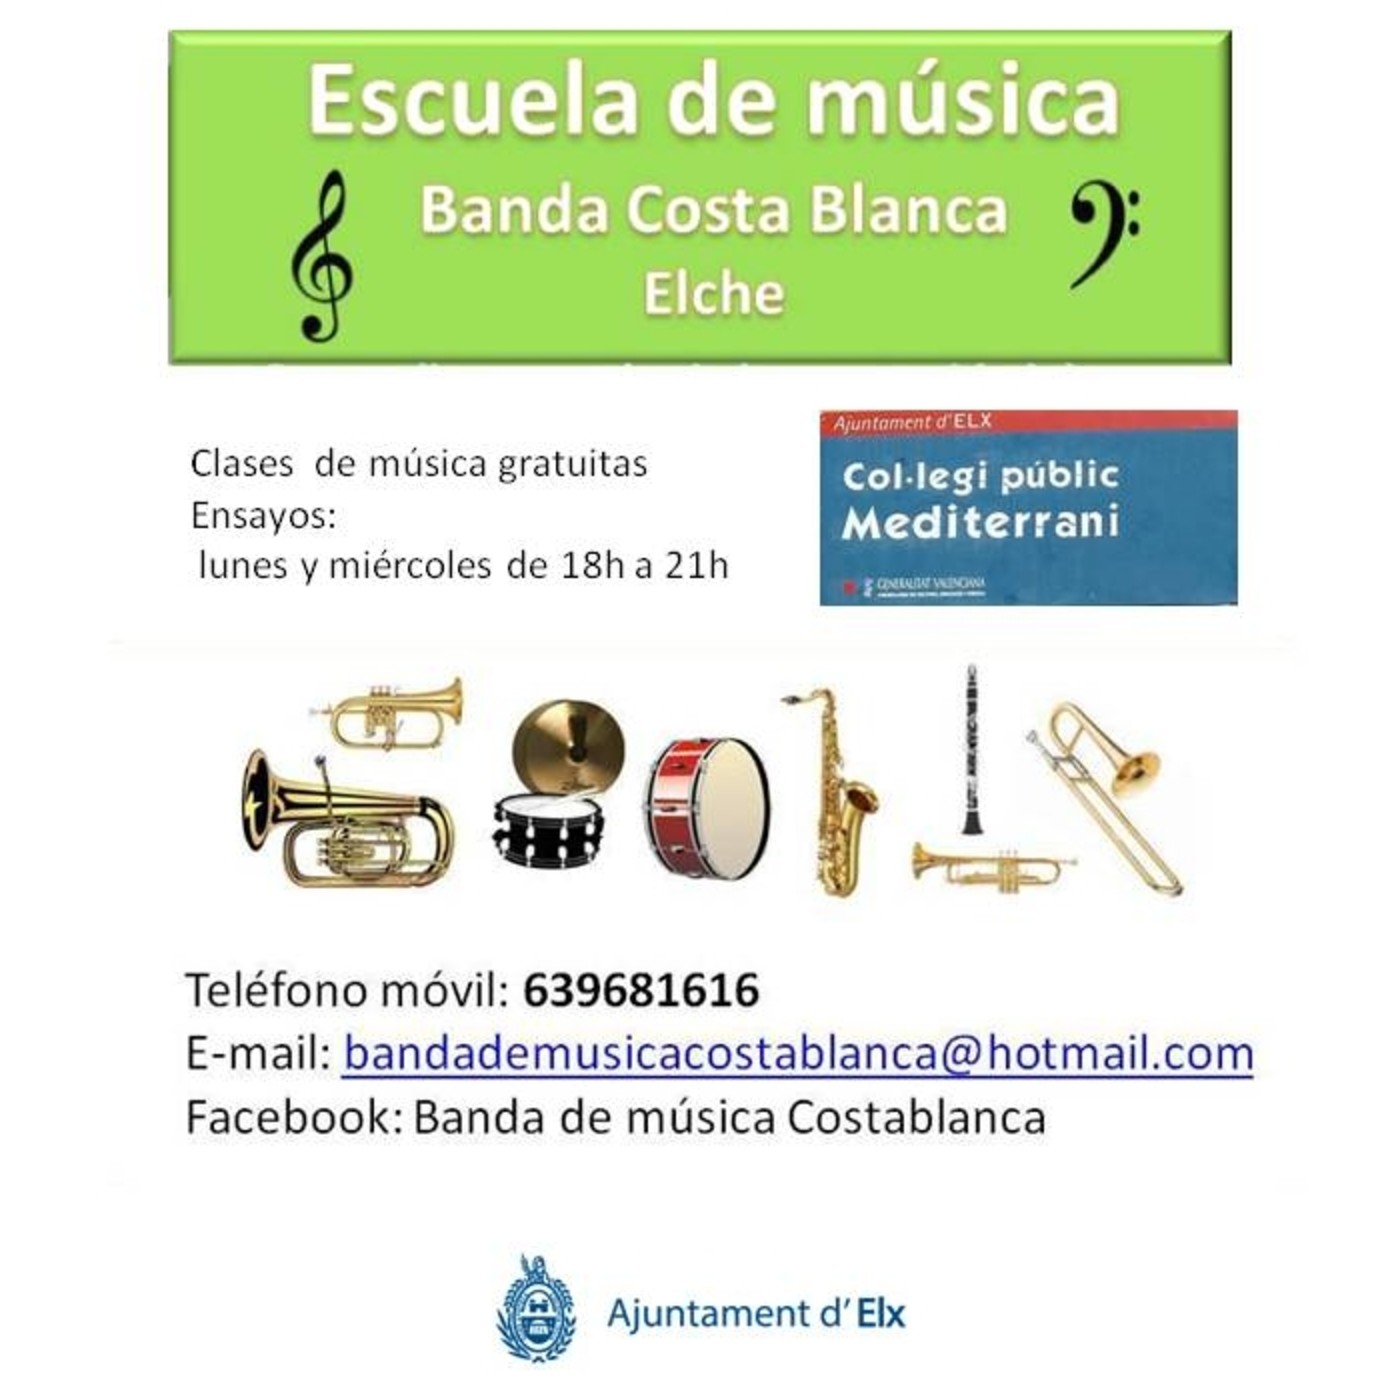 VERANO 2018 RADIO JOVE ELX: ESCUELA BANDA MUSICA:Banda Costablanca